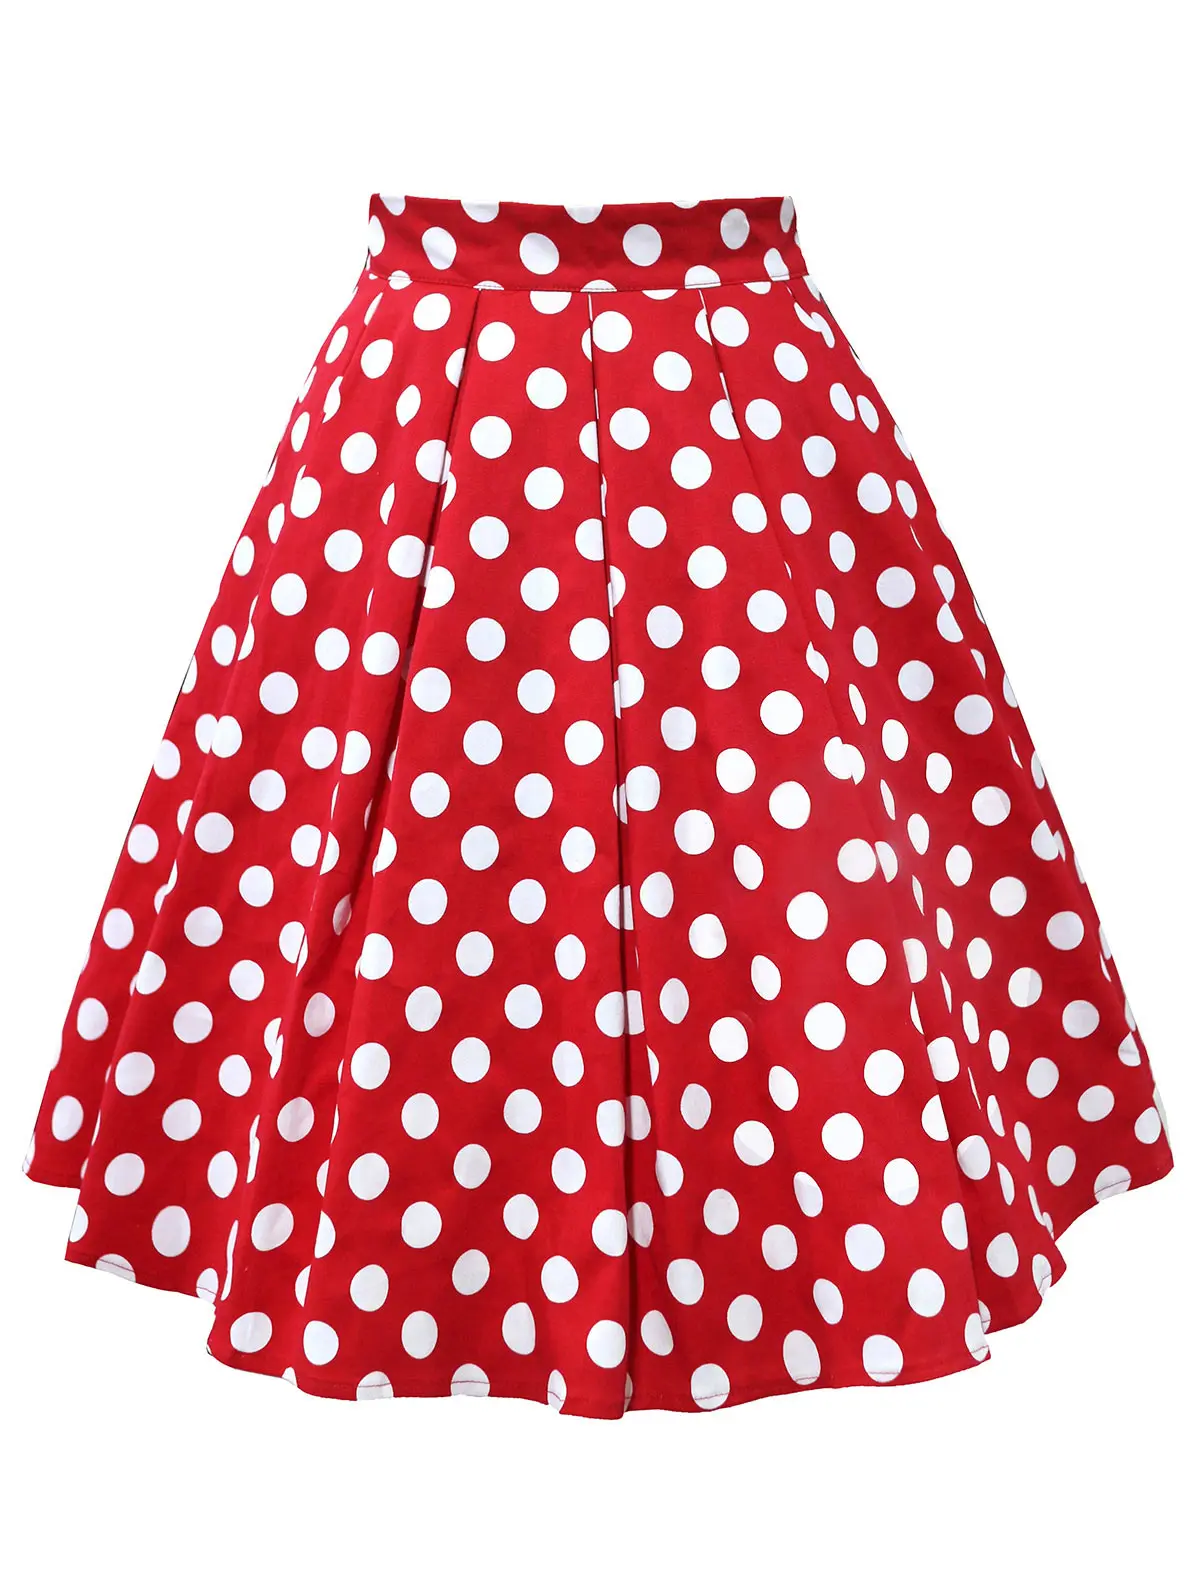 Wiplao хлопковая Летняя женская юбка красный черный белый горошек Высокая талия винтажная пачка короткая юбка faldas mujer повседневные Свинг миди юбки - Цвет: Ruby Red